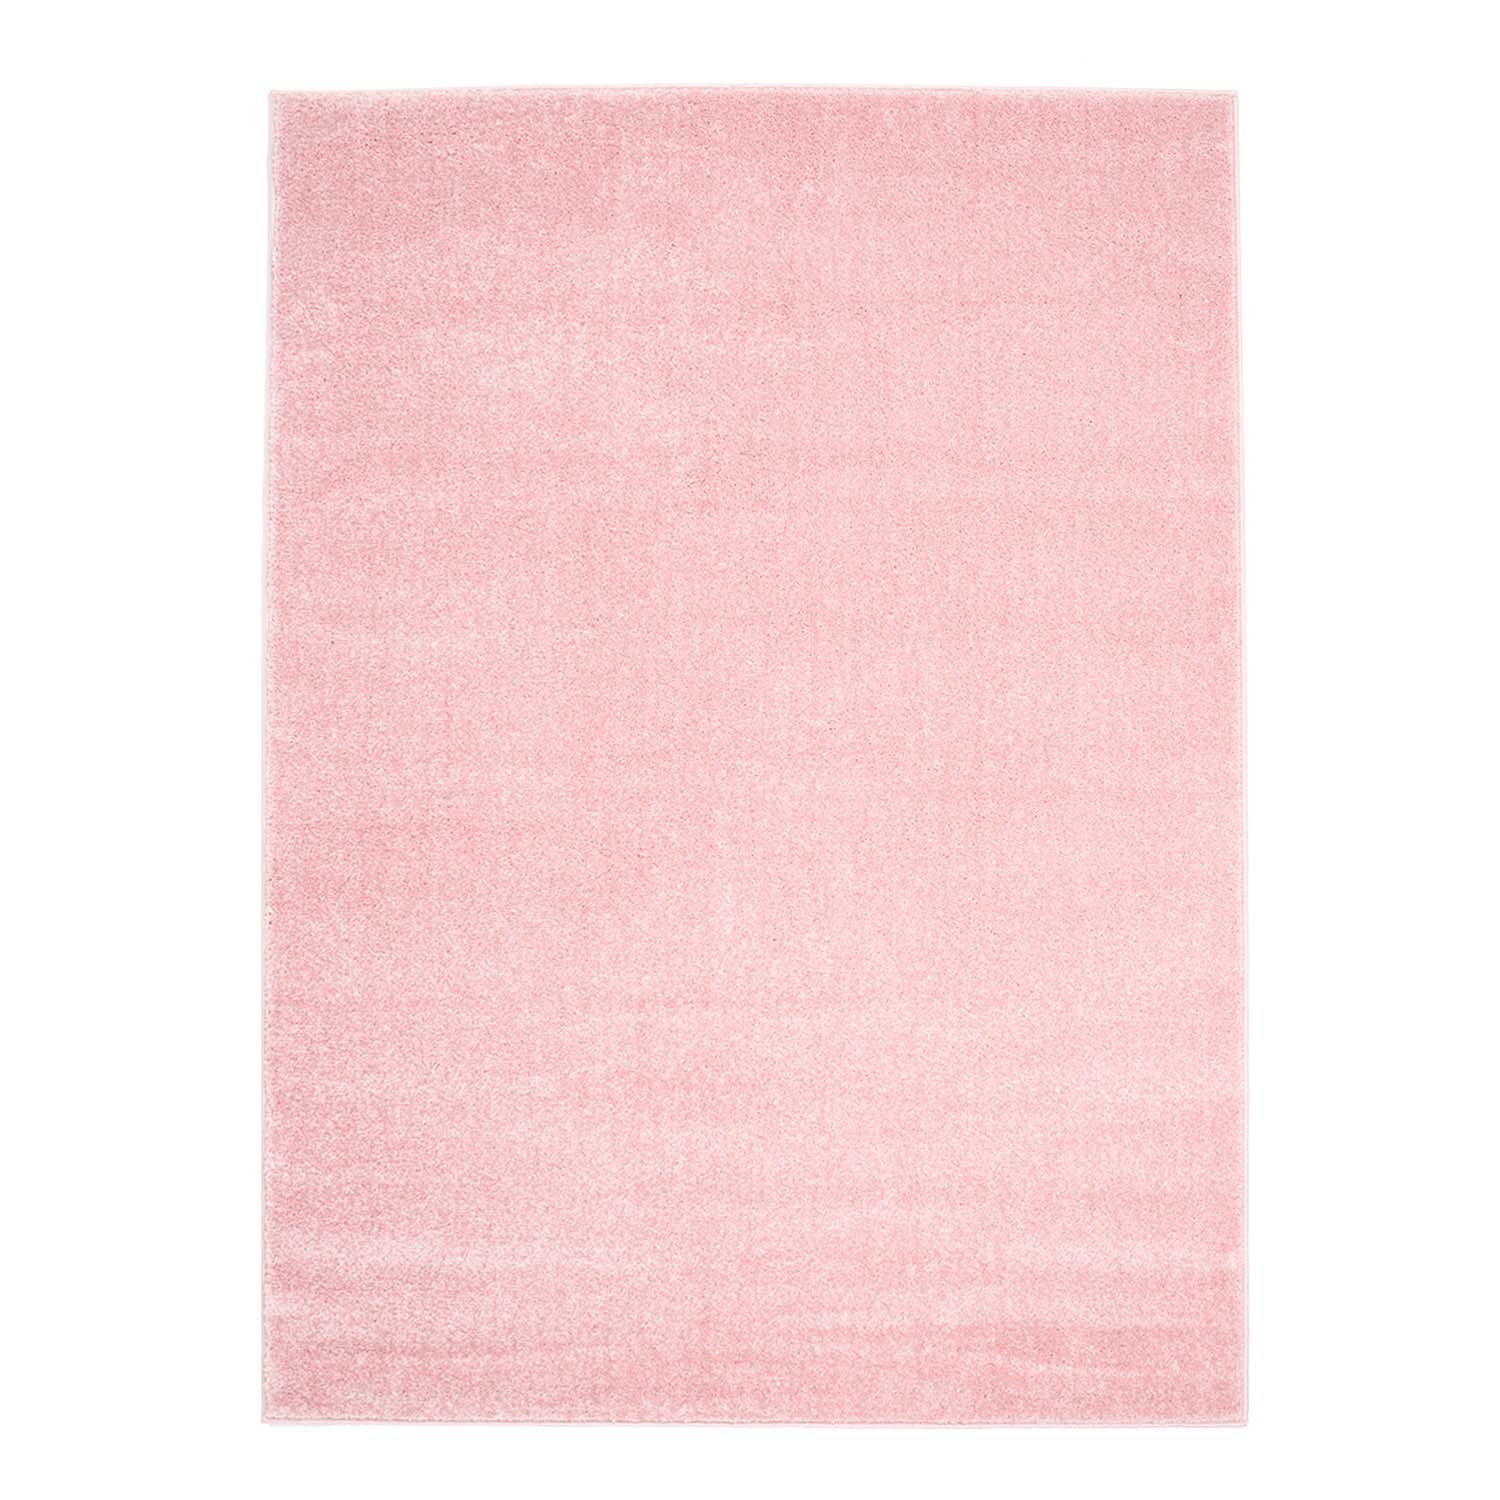 Tappeto Wilton - Moda (rosa)